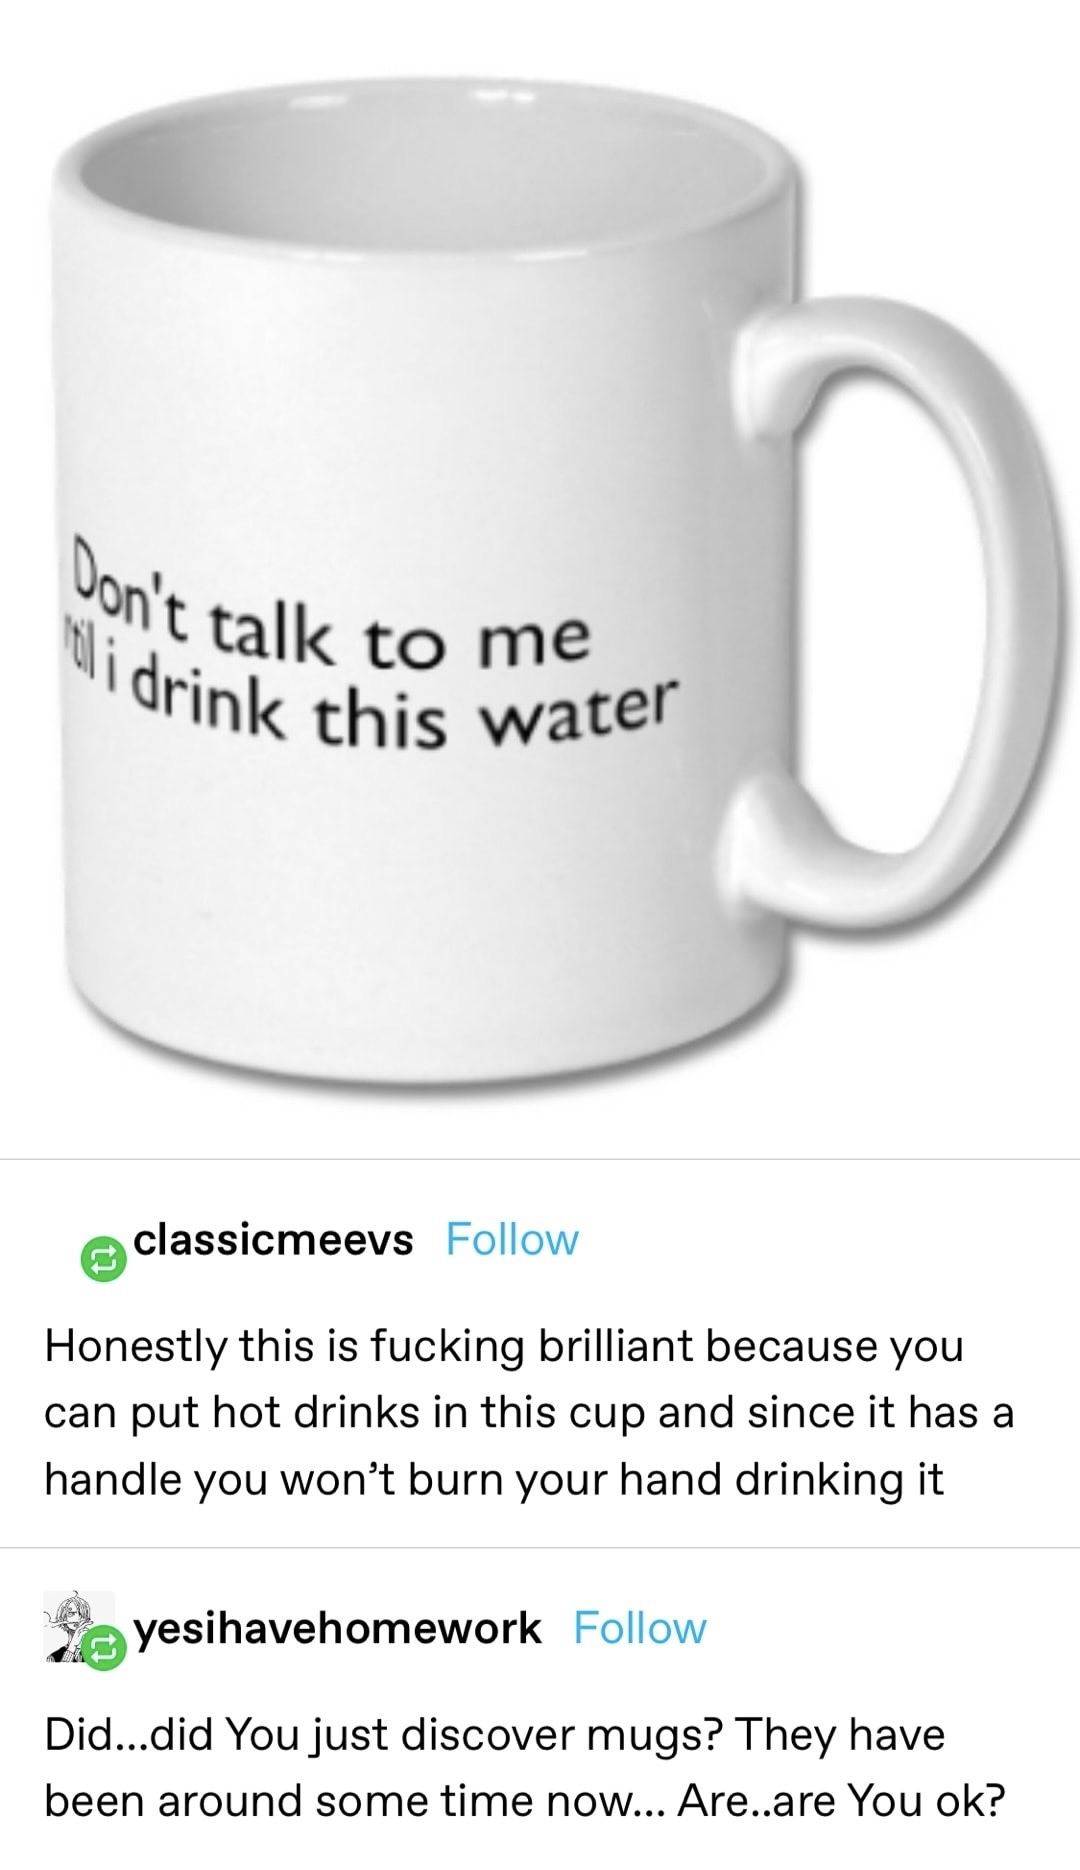 So that’s a mug